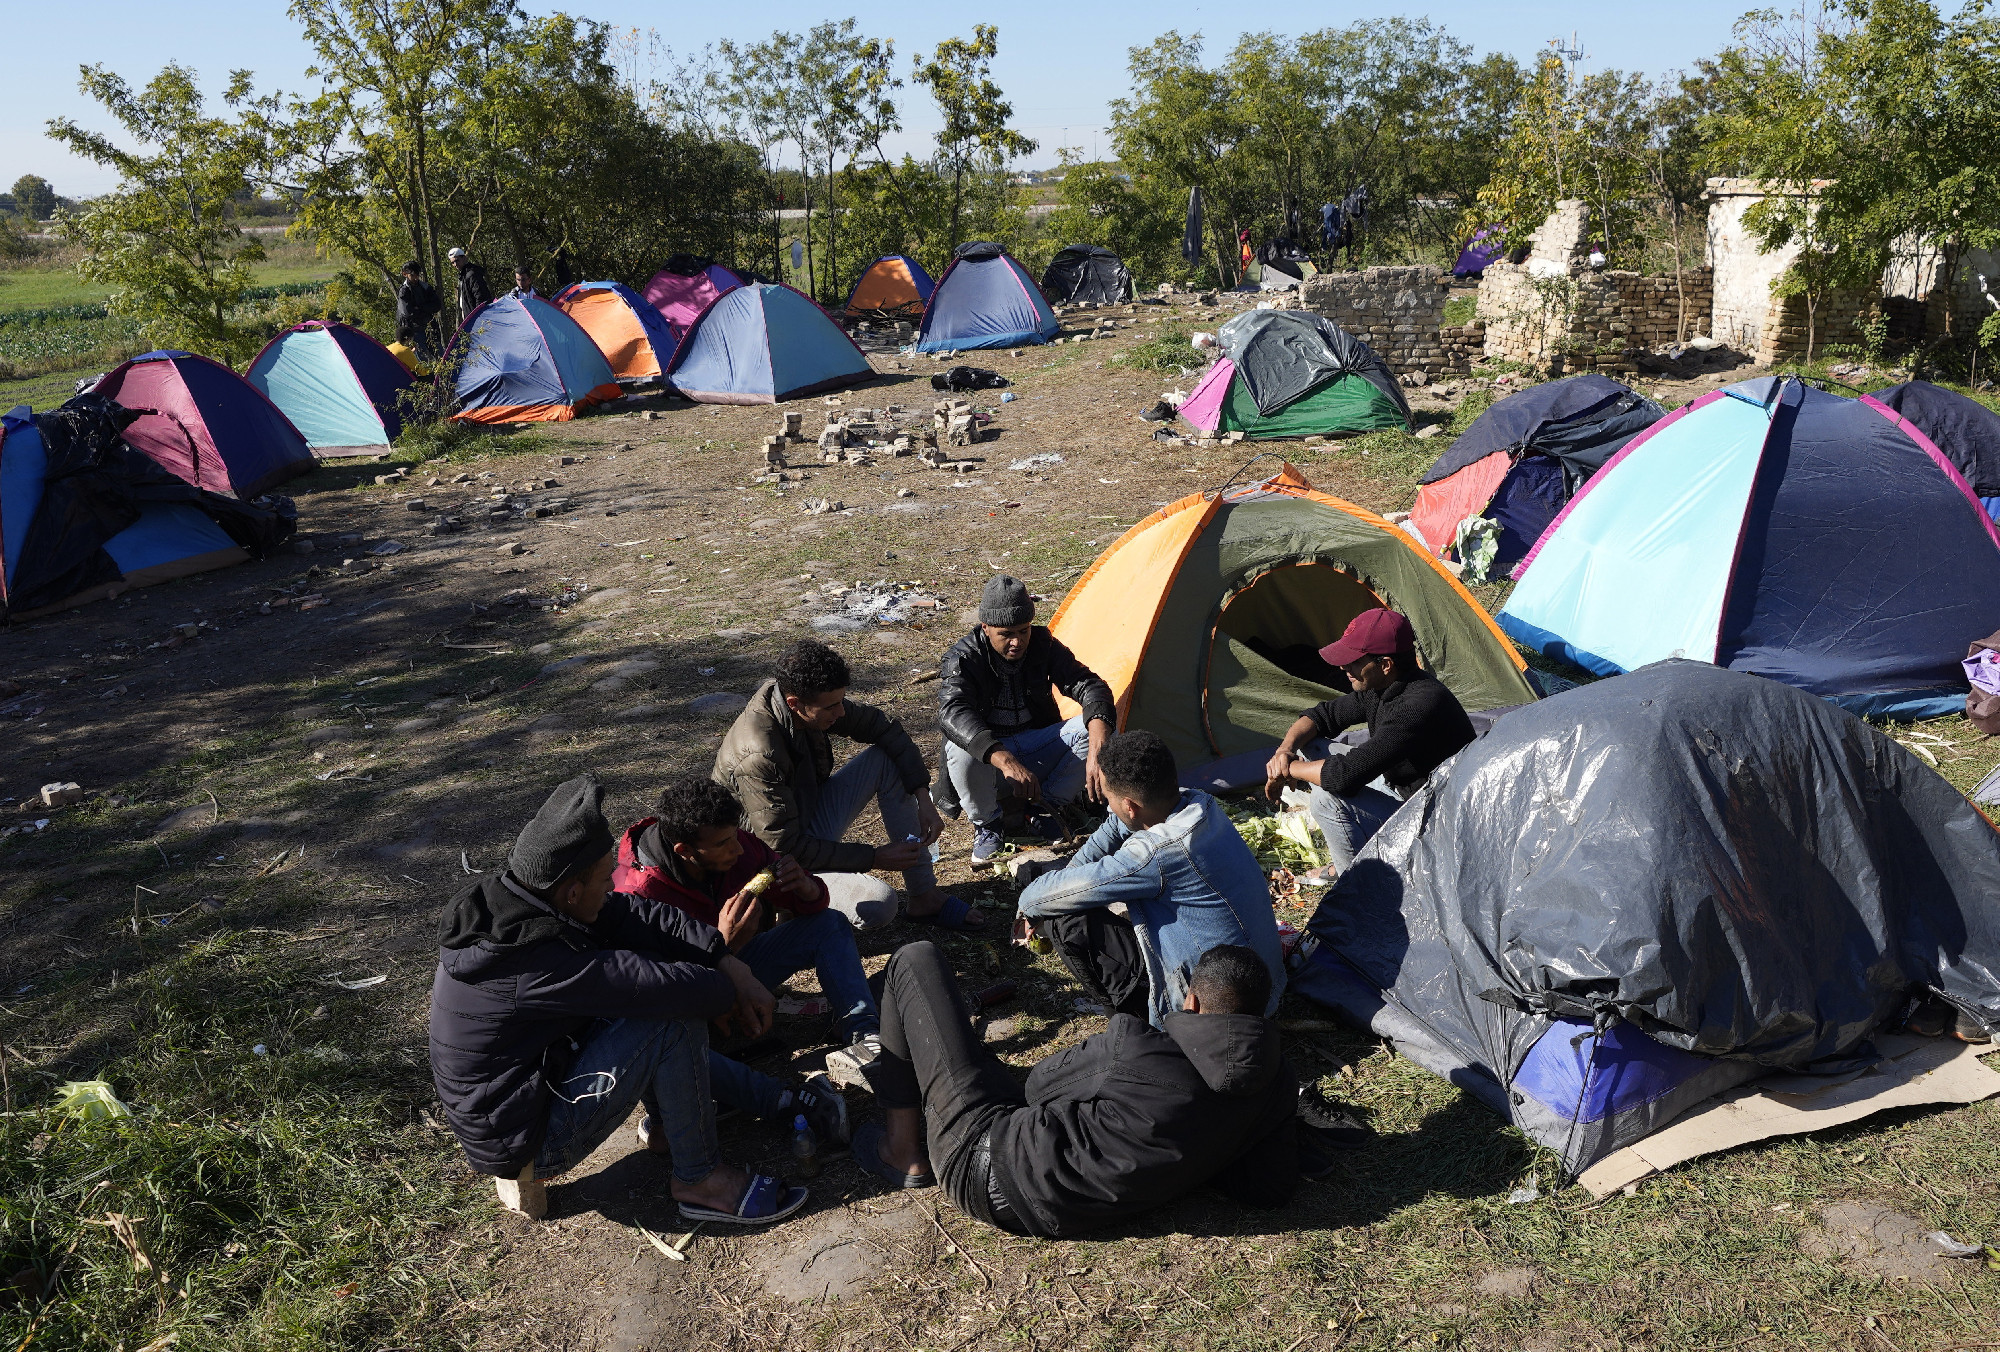 Lövöldözés után: máris visszatértek az illegális bevándorlók Horgosra